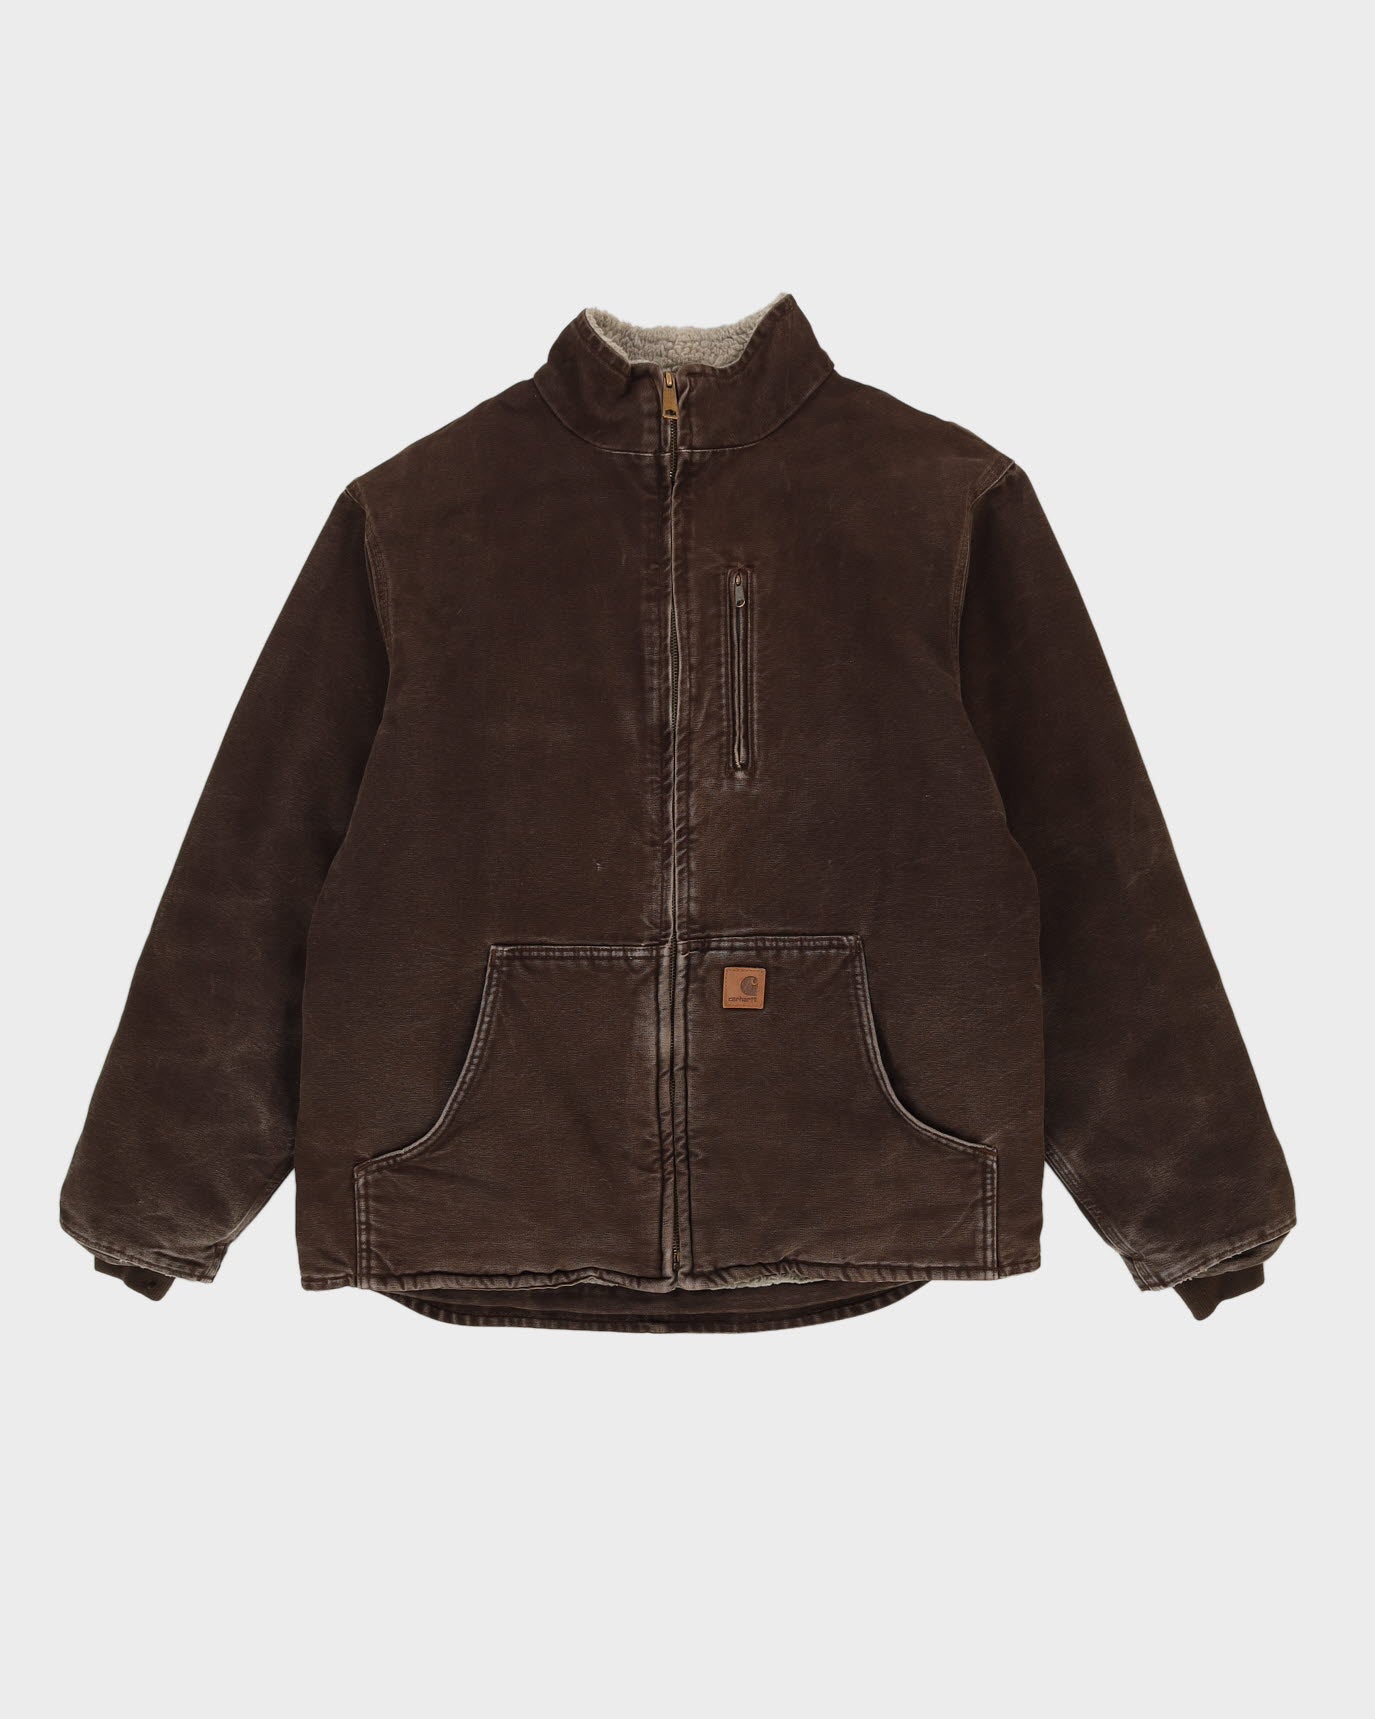 00s Carhartt Workwear Fleece Lined Brown Jacket - L